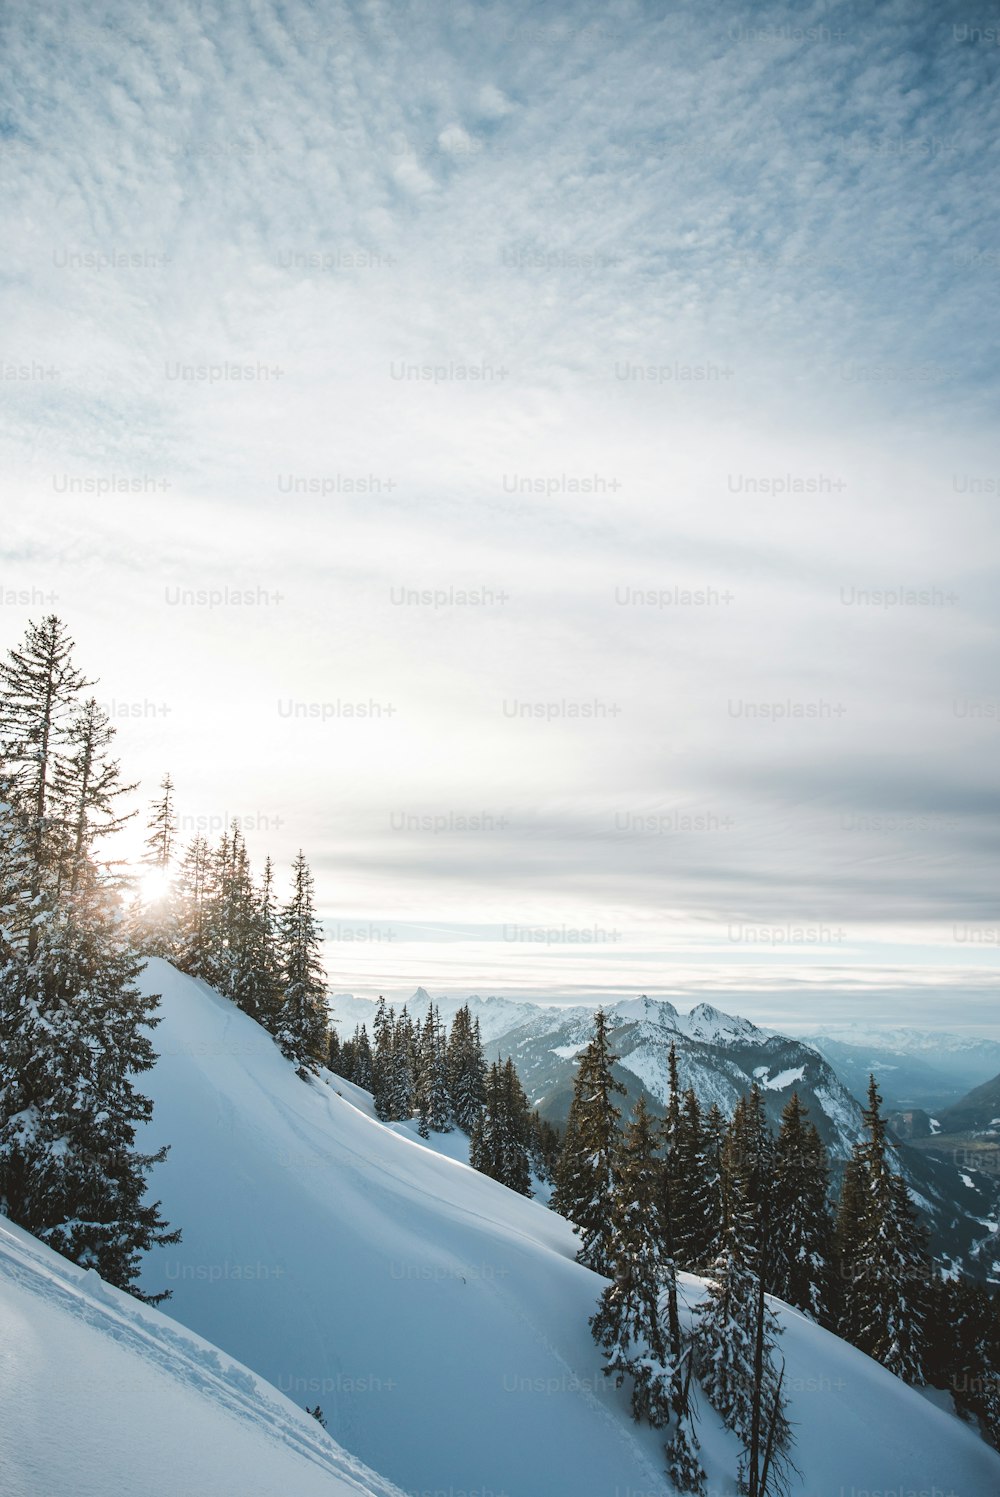 Una persona montando esquís en la cima de una pendiente cubierta de nieve